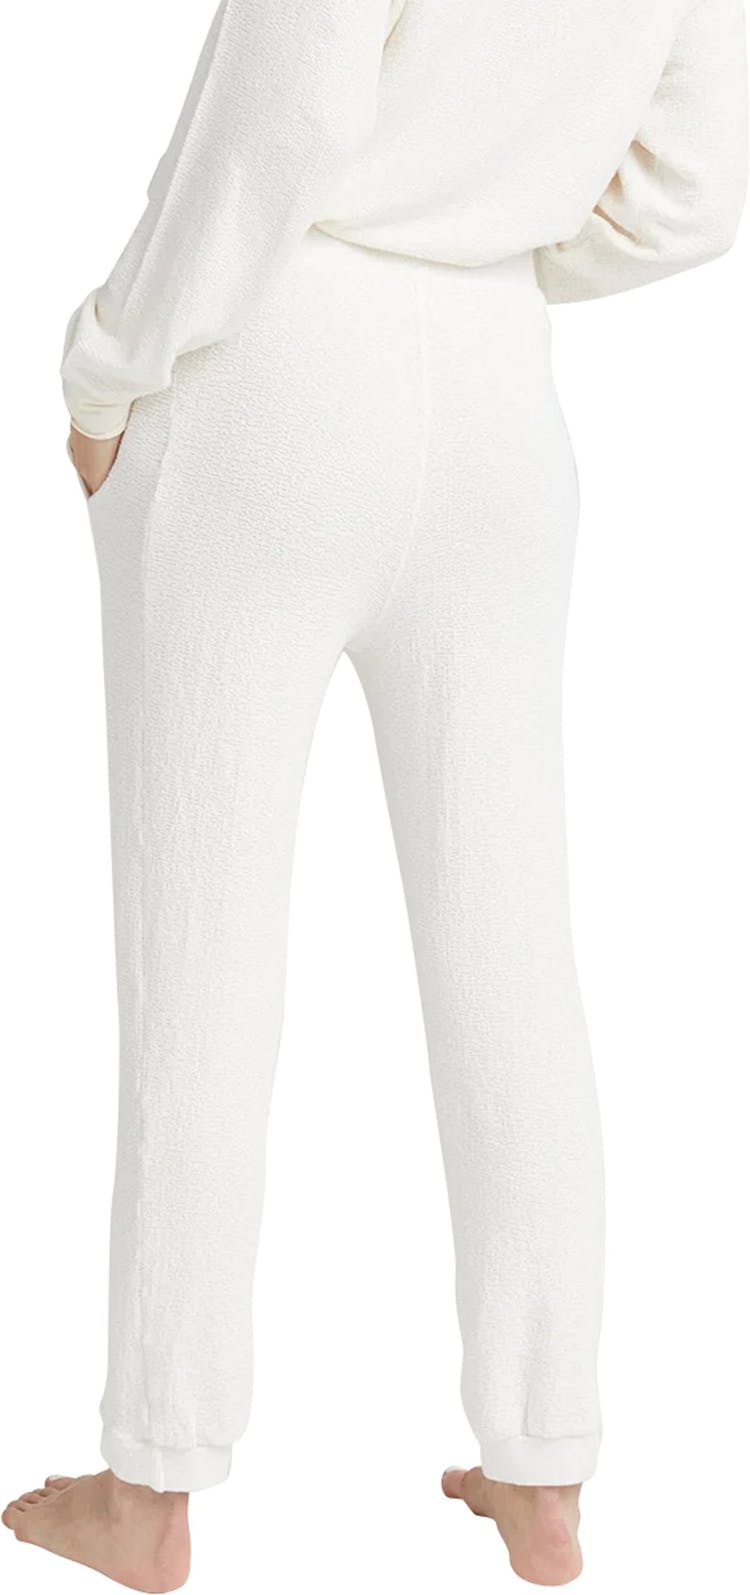 Numéro de l'image de la galerie de produits 2 pour le produit Pantalon Unwind en tricot Bounce - Femme